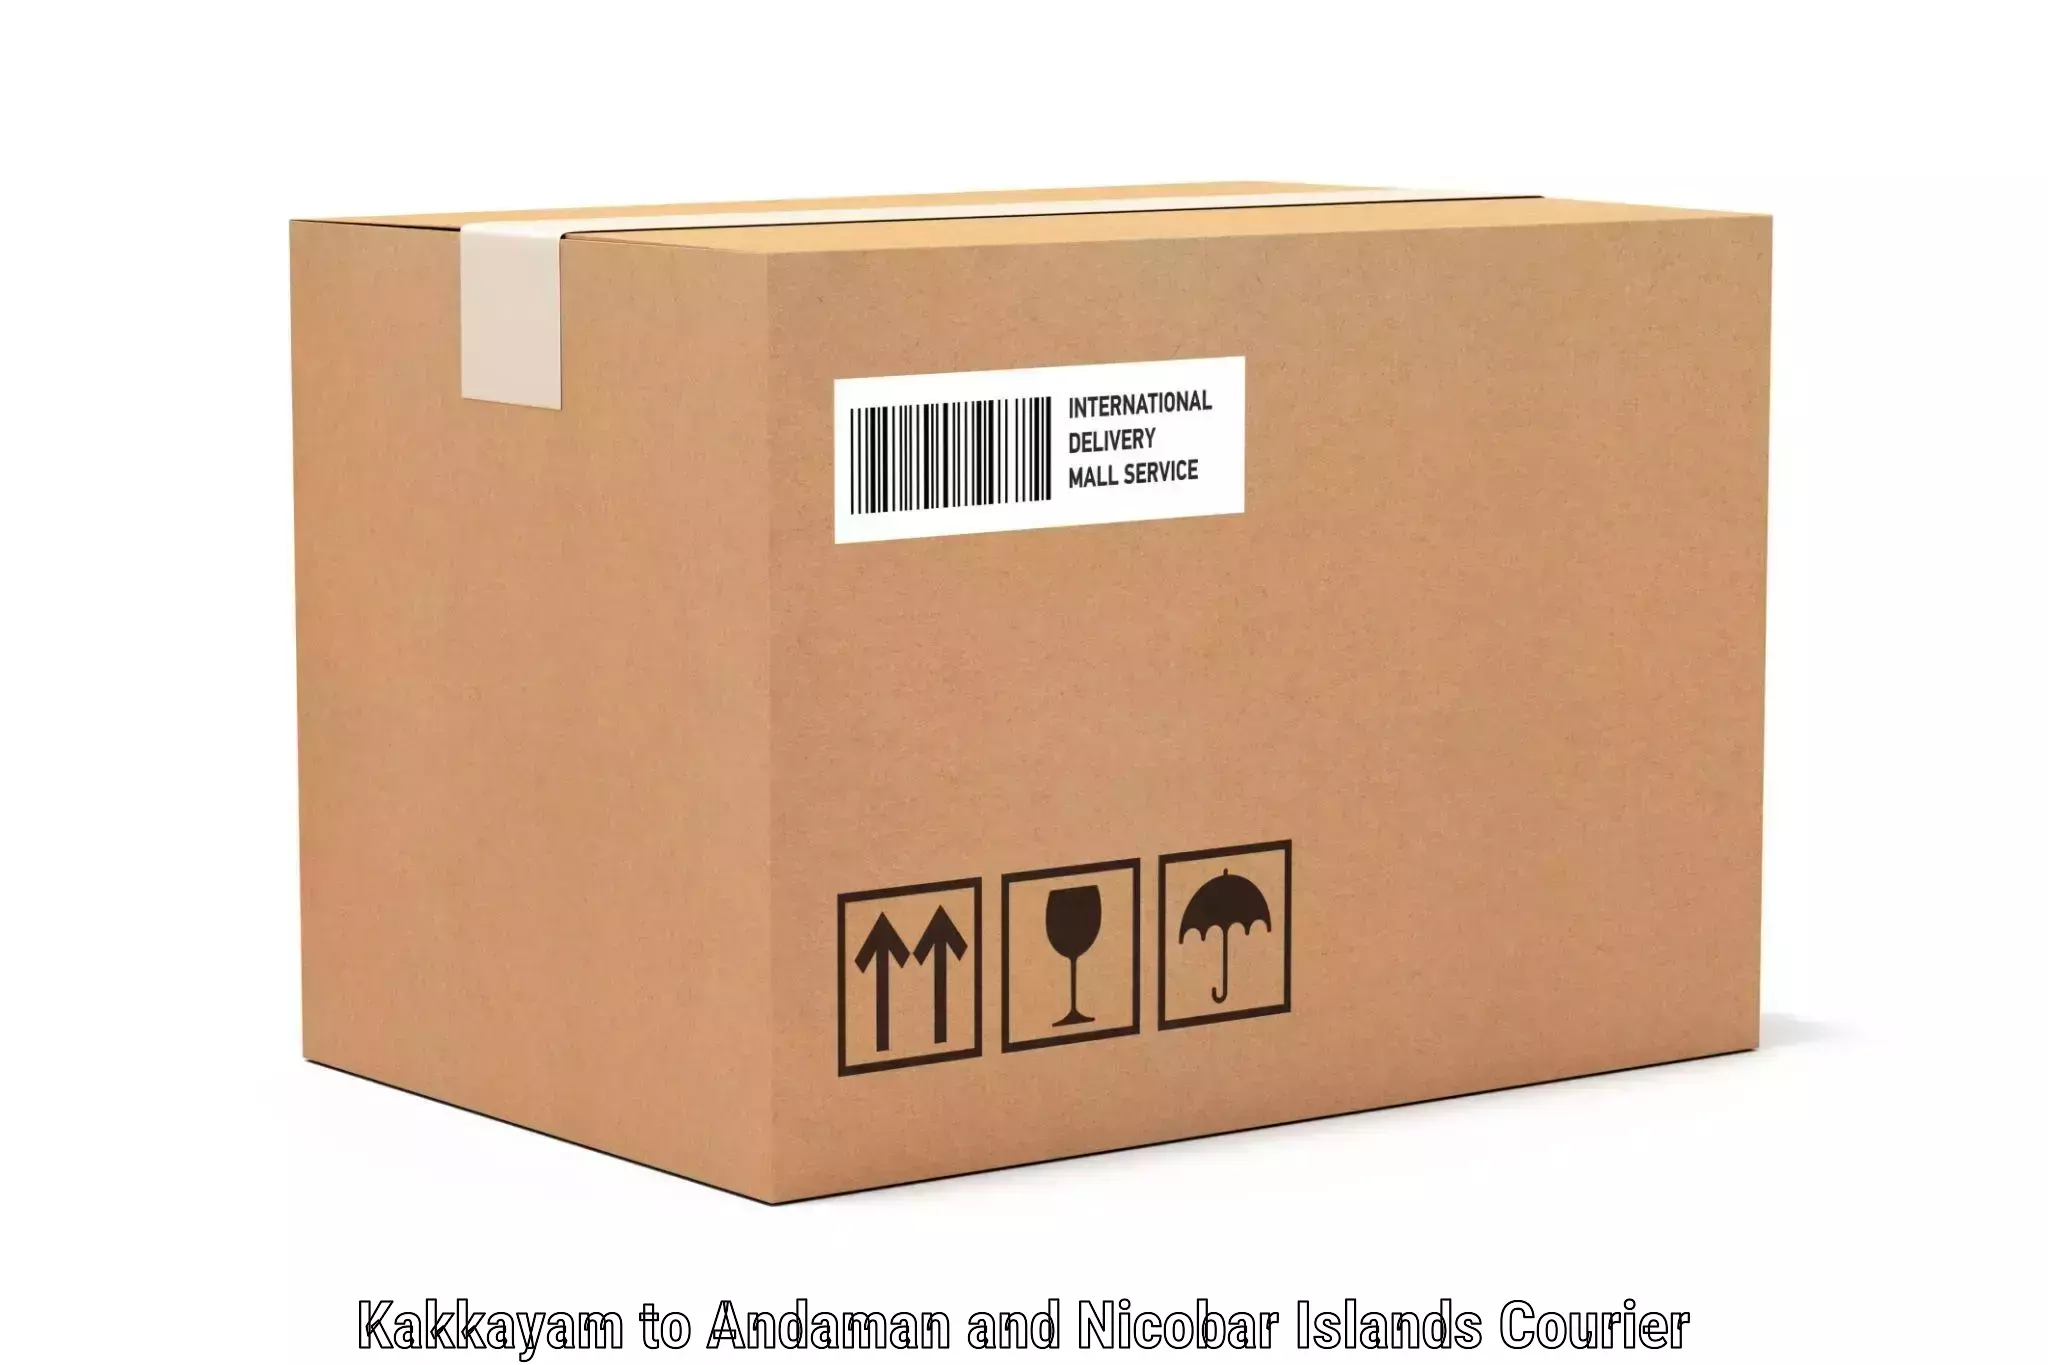 Luggage delivery estimate Kakkayam to Andaman and Nicobar Islands